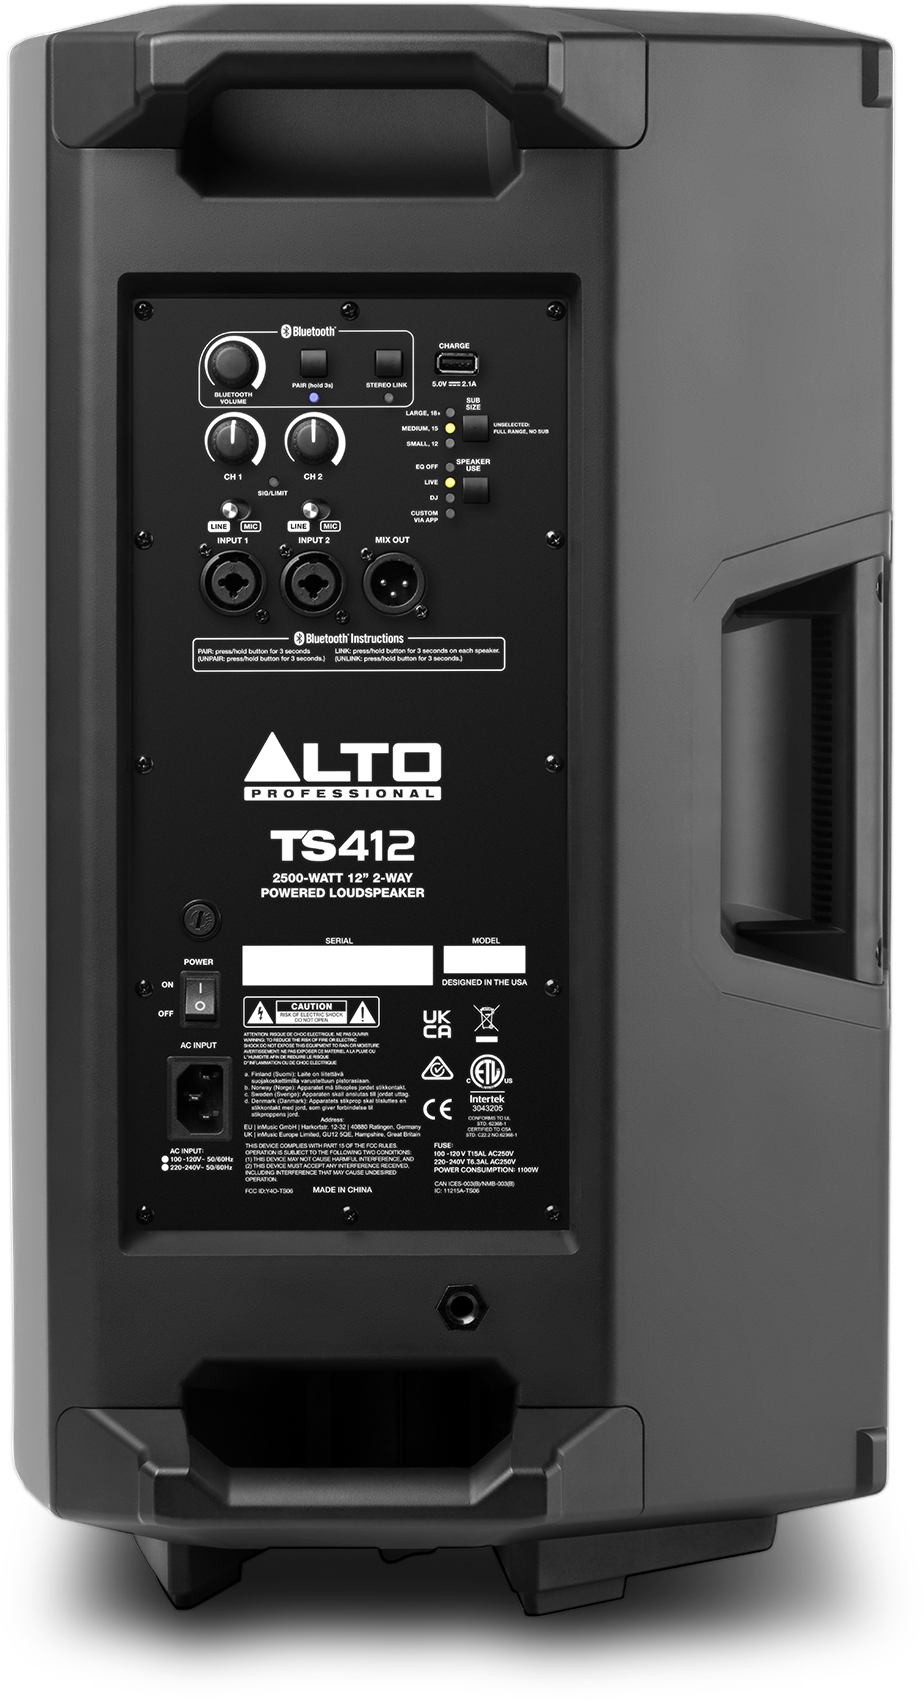 Alto Ts 412 - Aktive Lautsprecher - Variation 2